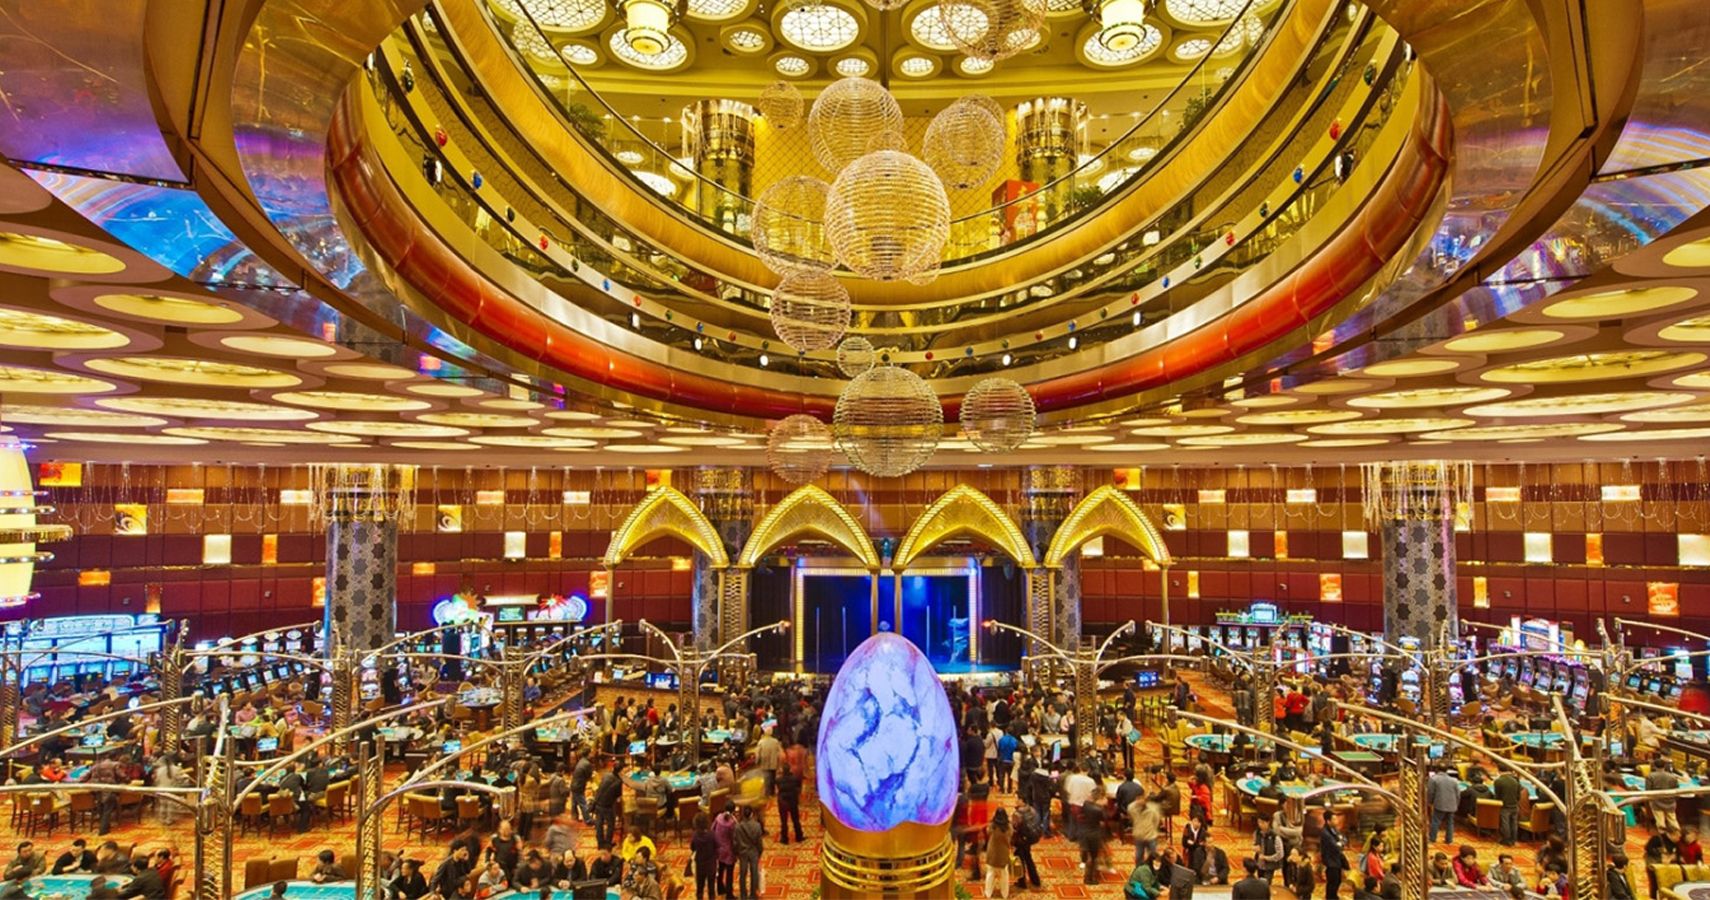 Interior of a Macau casino